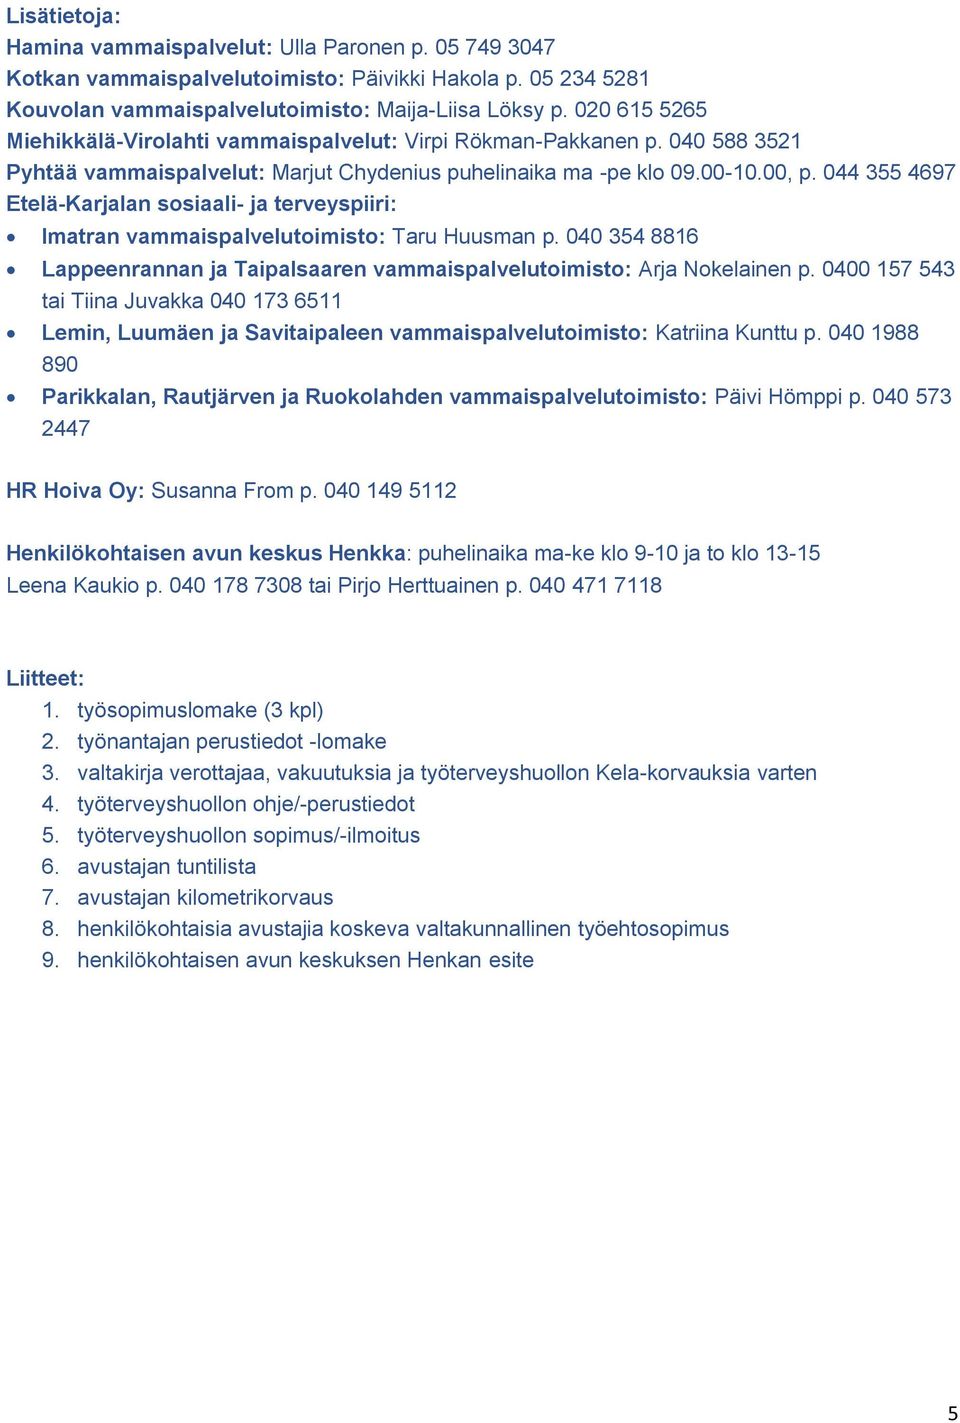 044 355 4697 Etelä-Karjalan sosiaali- ja terveyspiiri: Imatran vammaispalvelutoimisto: Taru Huusman p. 040 354 8816 Lappeenrannan ja Taipalsaaren vammaispalvelutoimisto: Arja Nokelainen p.